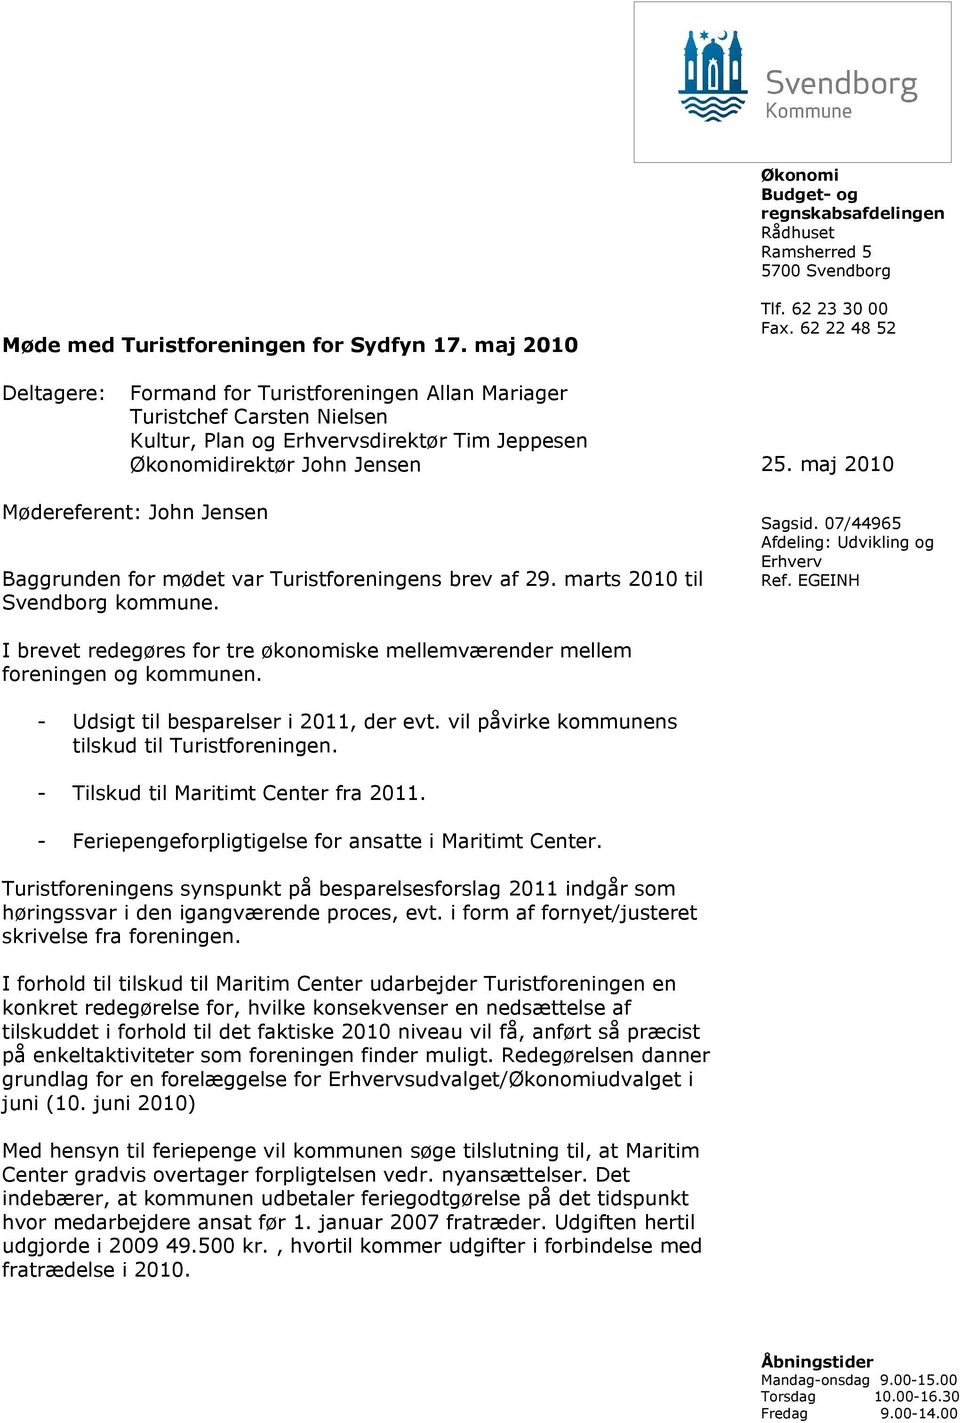 maj 2010 Mødereferent: John Jensen Baggrunden for mødet var Turistforeningens brev af 29. marts 2010 til Svendborg kommune. Sagsid. 07/44965 Afdeling: Udvikling og Erhverv Ref.